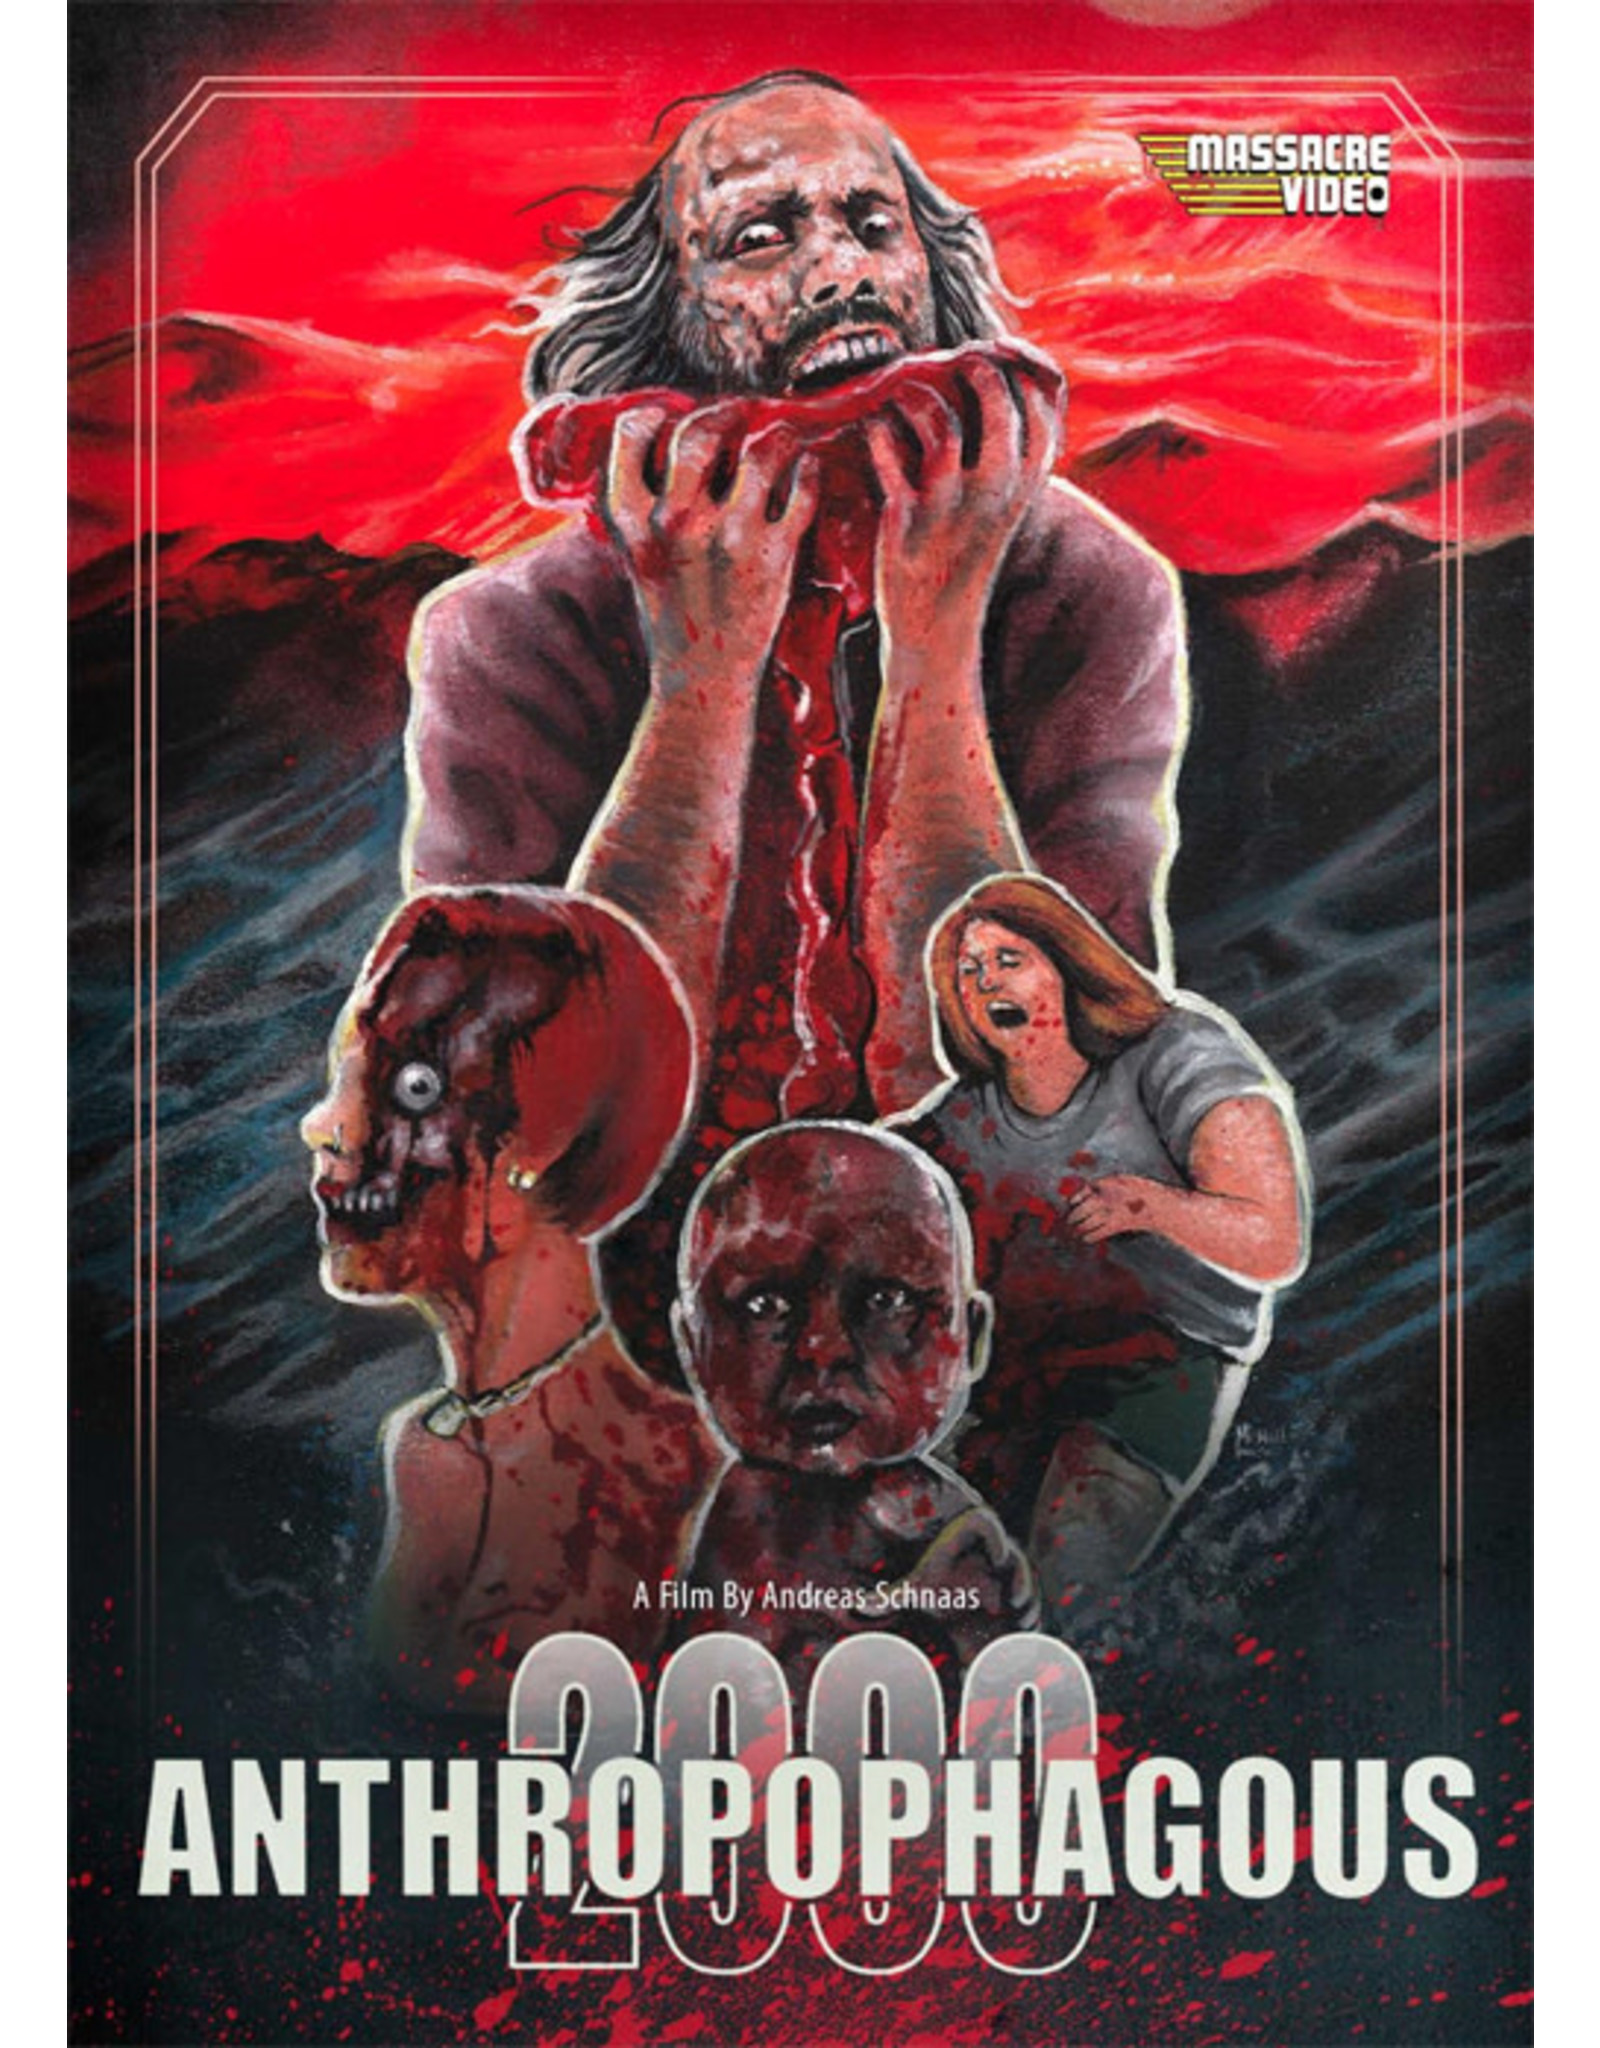 Horror Cult Anthropophagous 2000 - Massacre Video (Used)